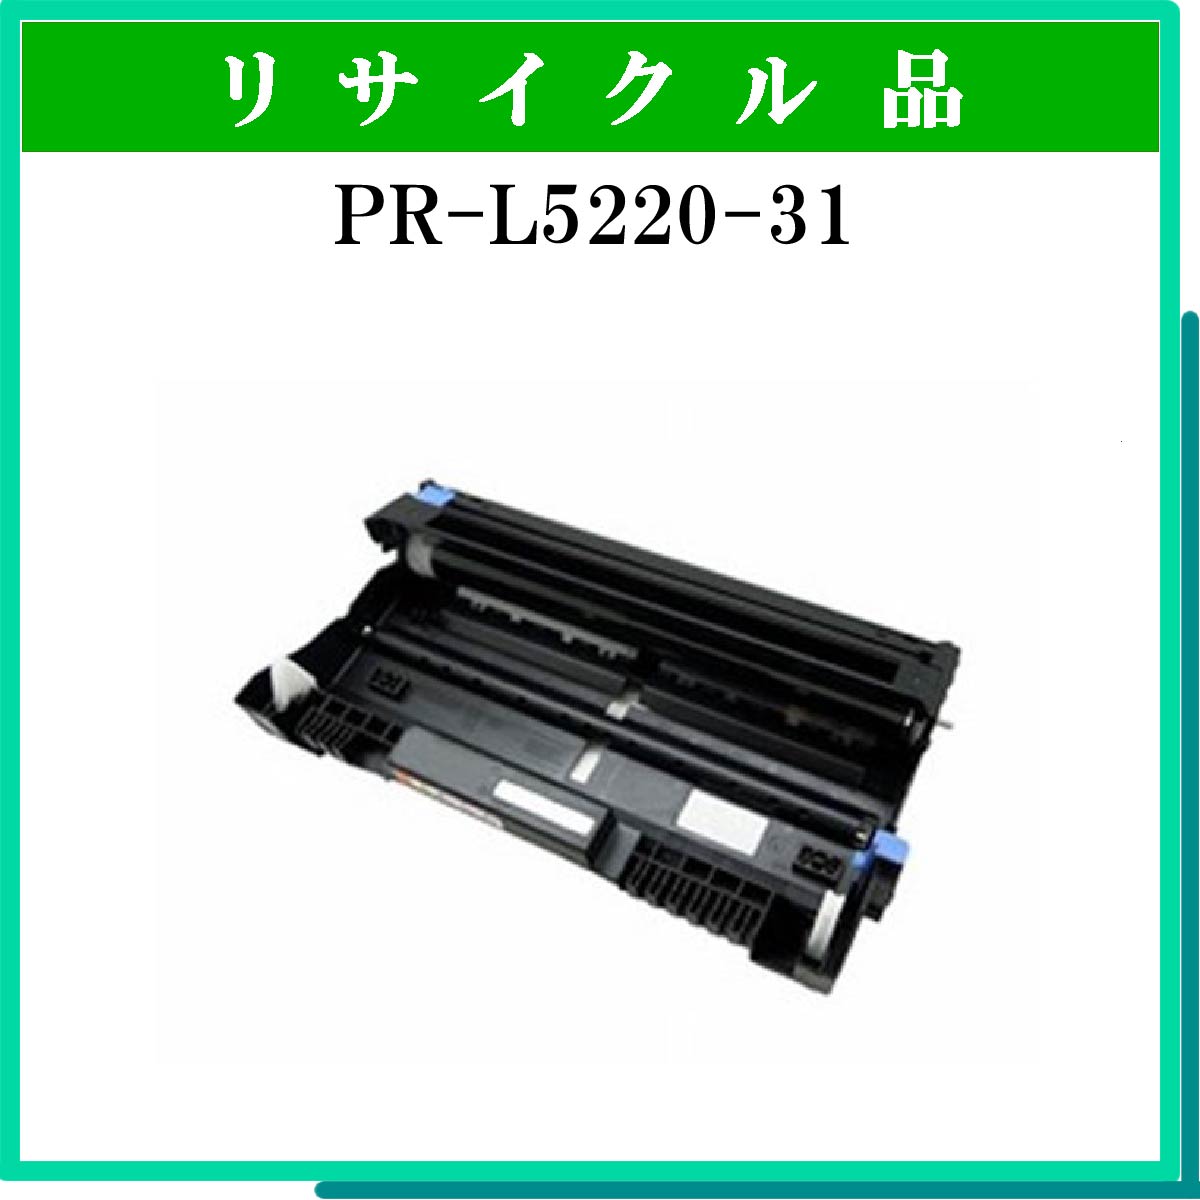 PR-L5220-31